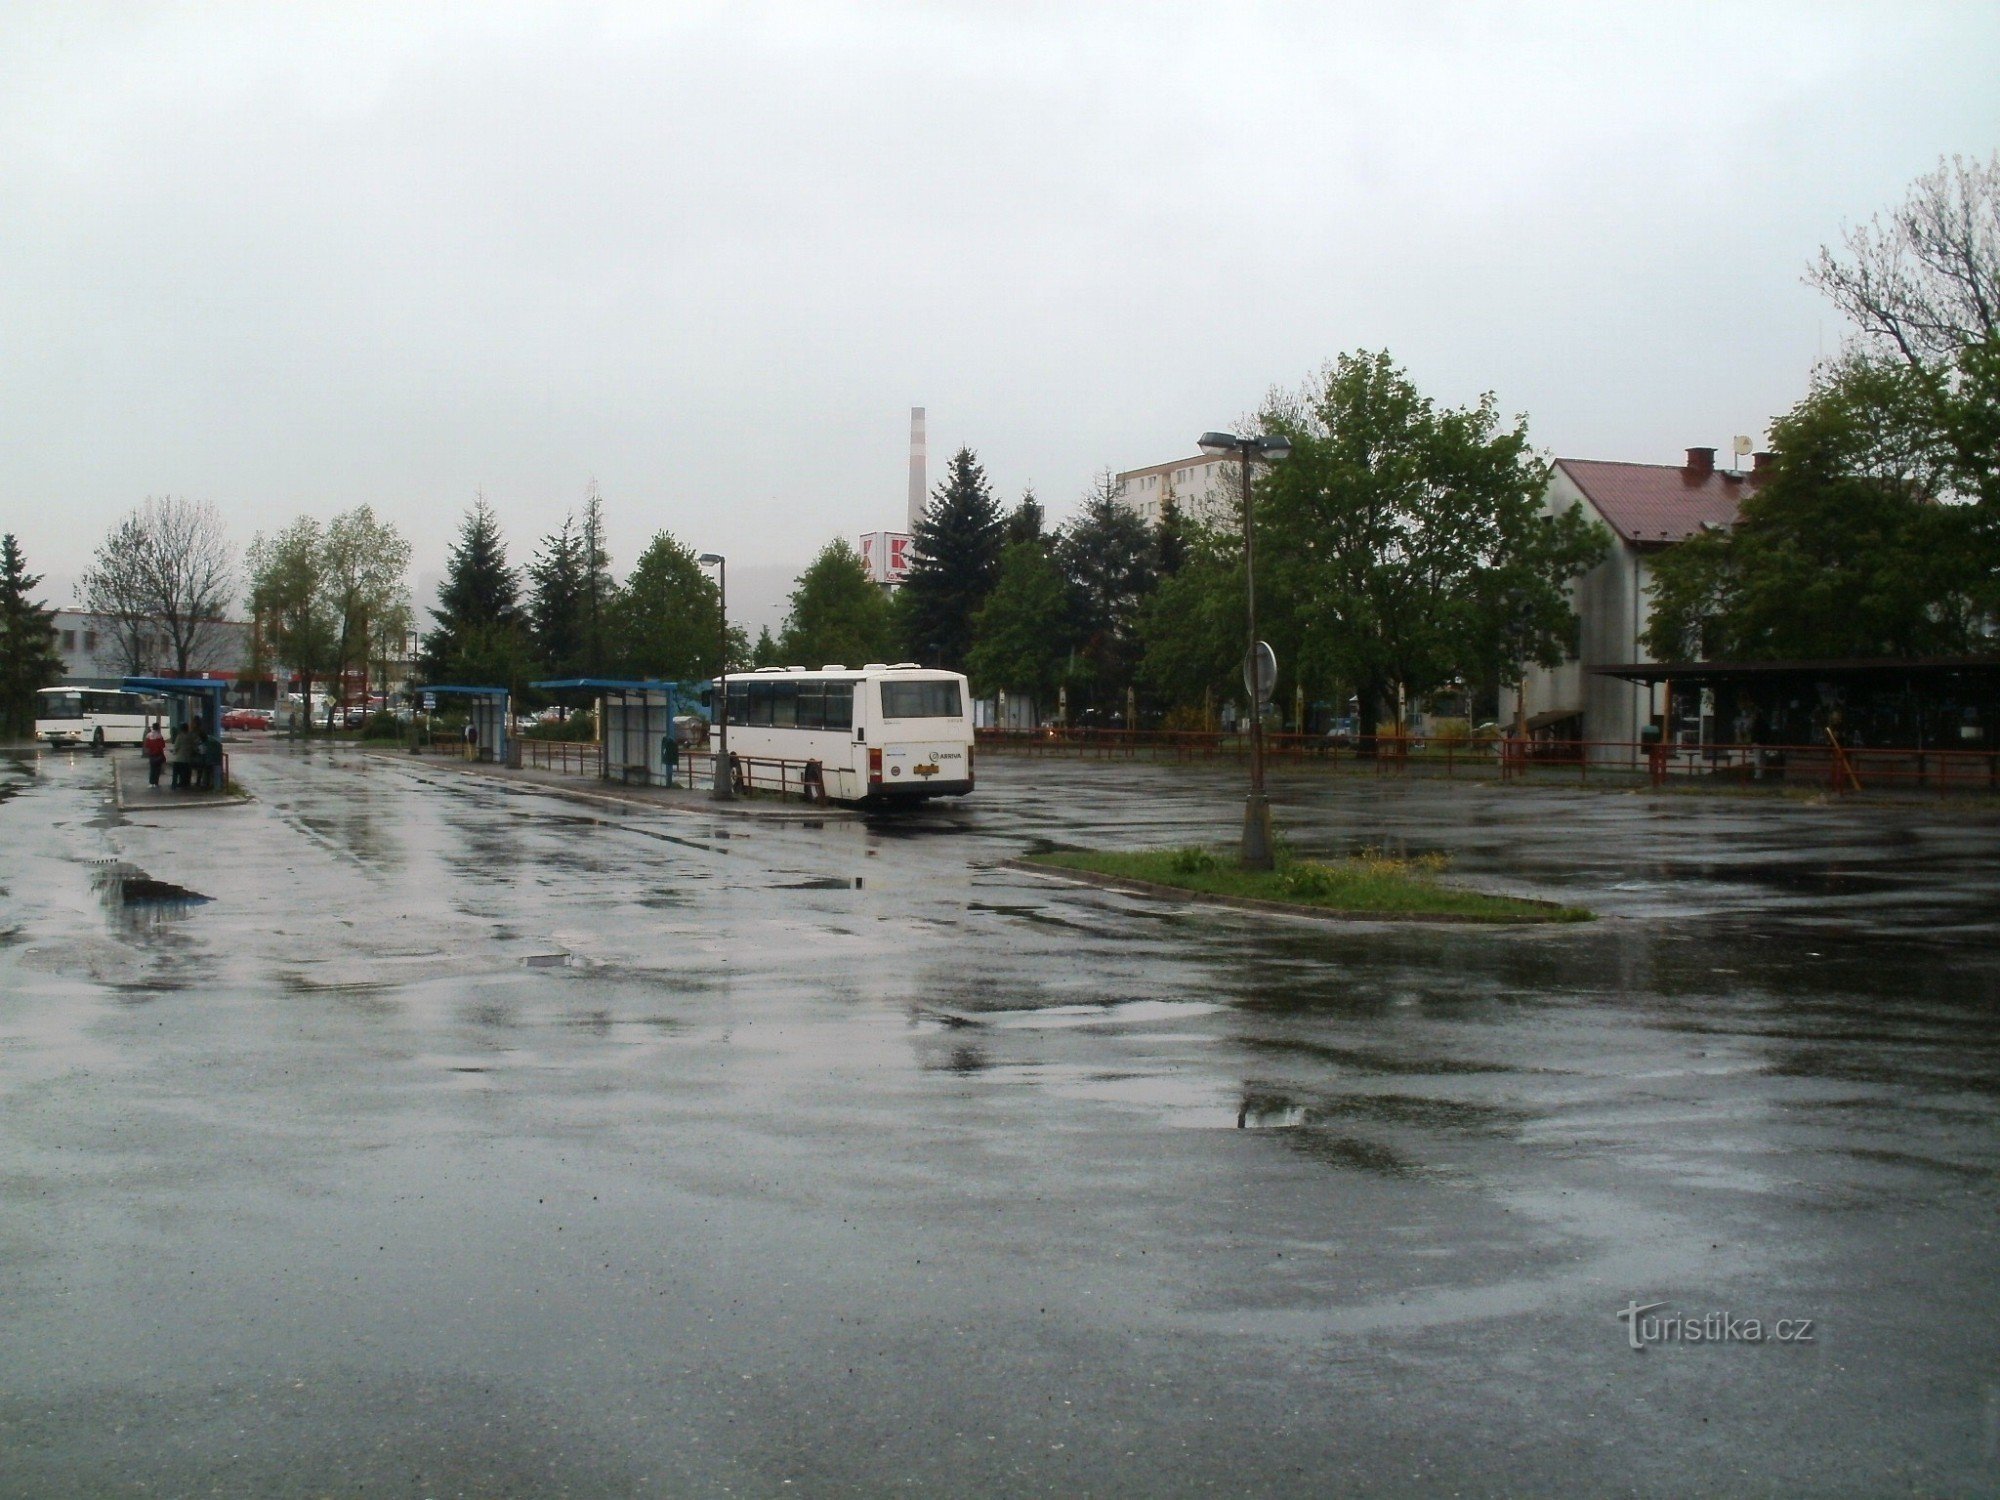 Dvur Králové nad Labem - Busbahnhof